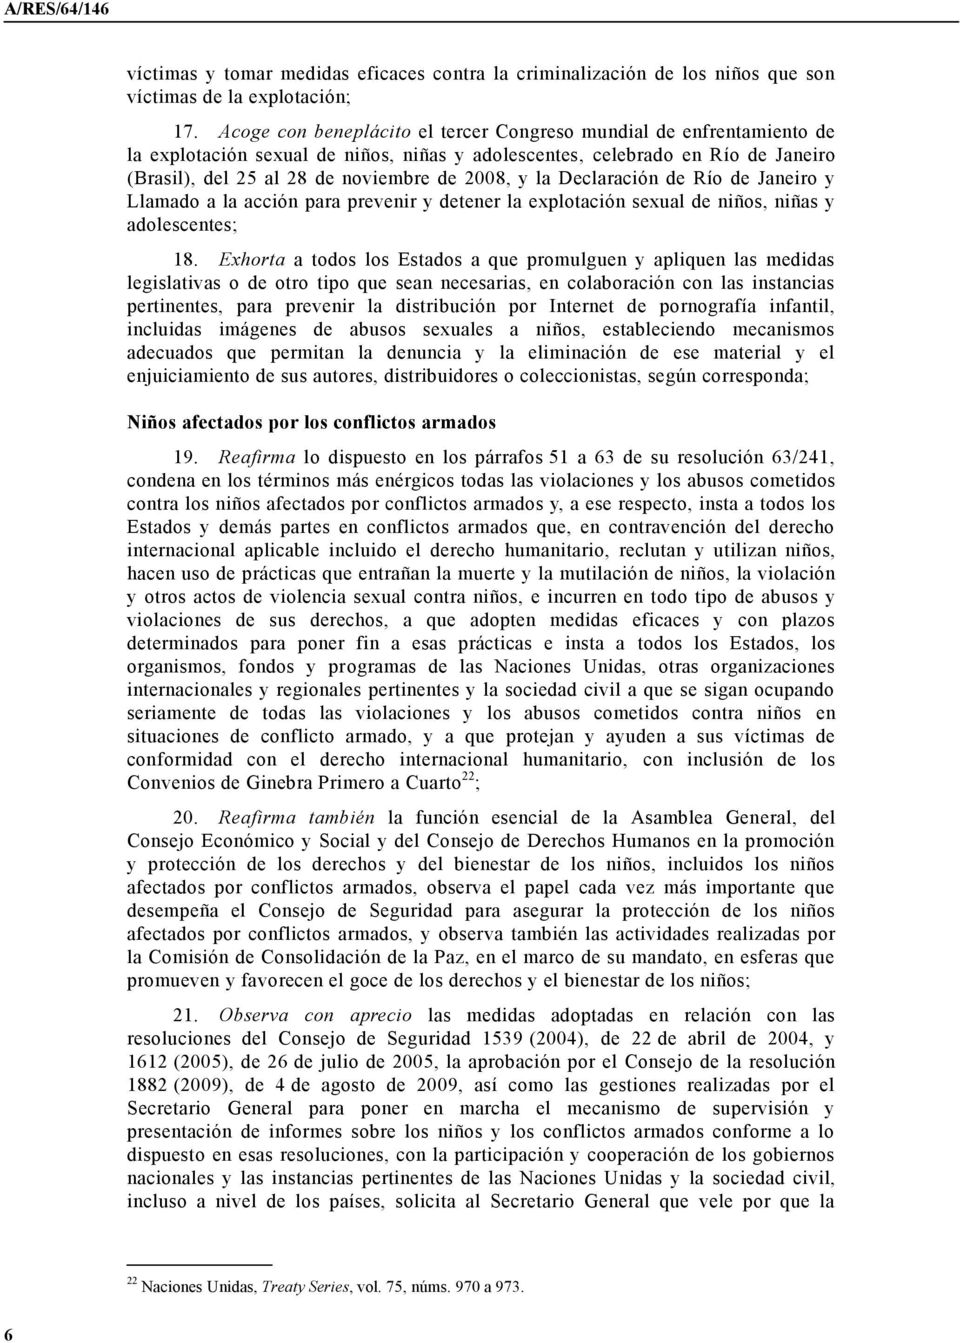 la Declaración de Río de Janeiro y Llamado a la acción para prevenir y detener la explotación sexual de niños, niñas y adolescentes; 18.